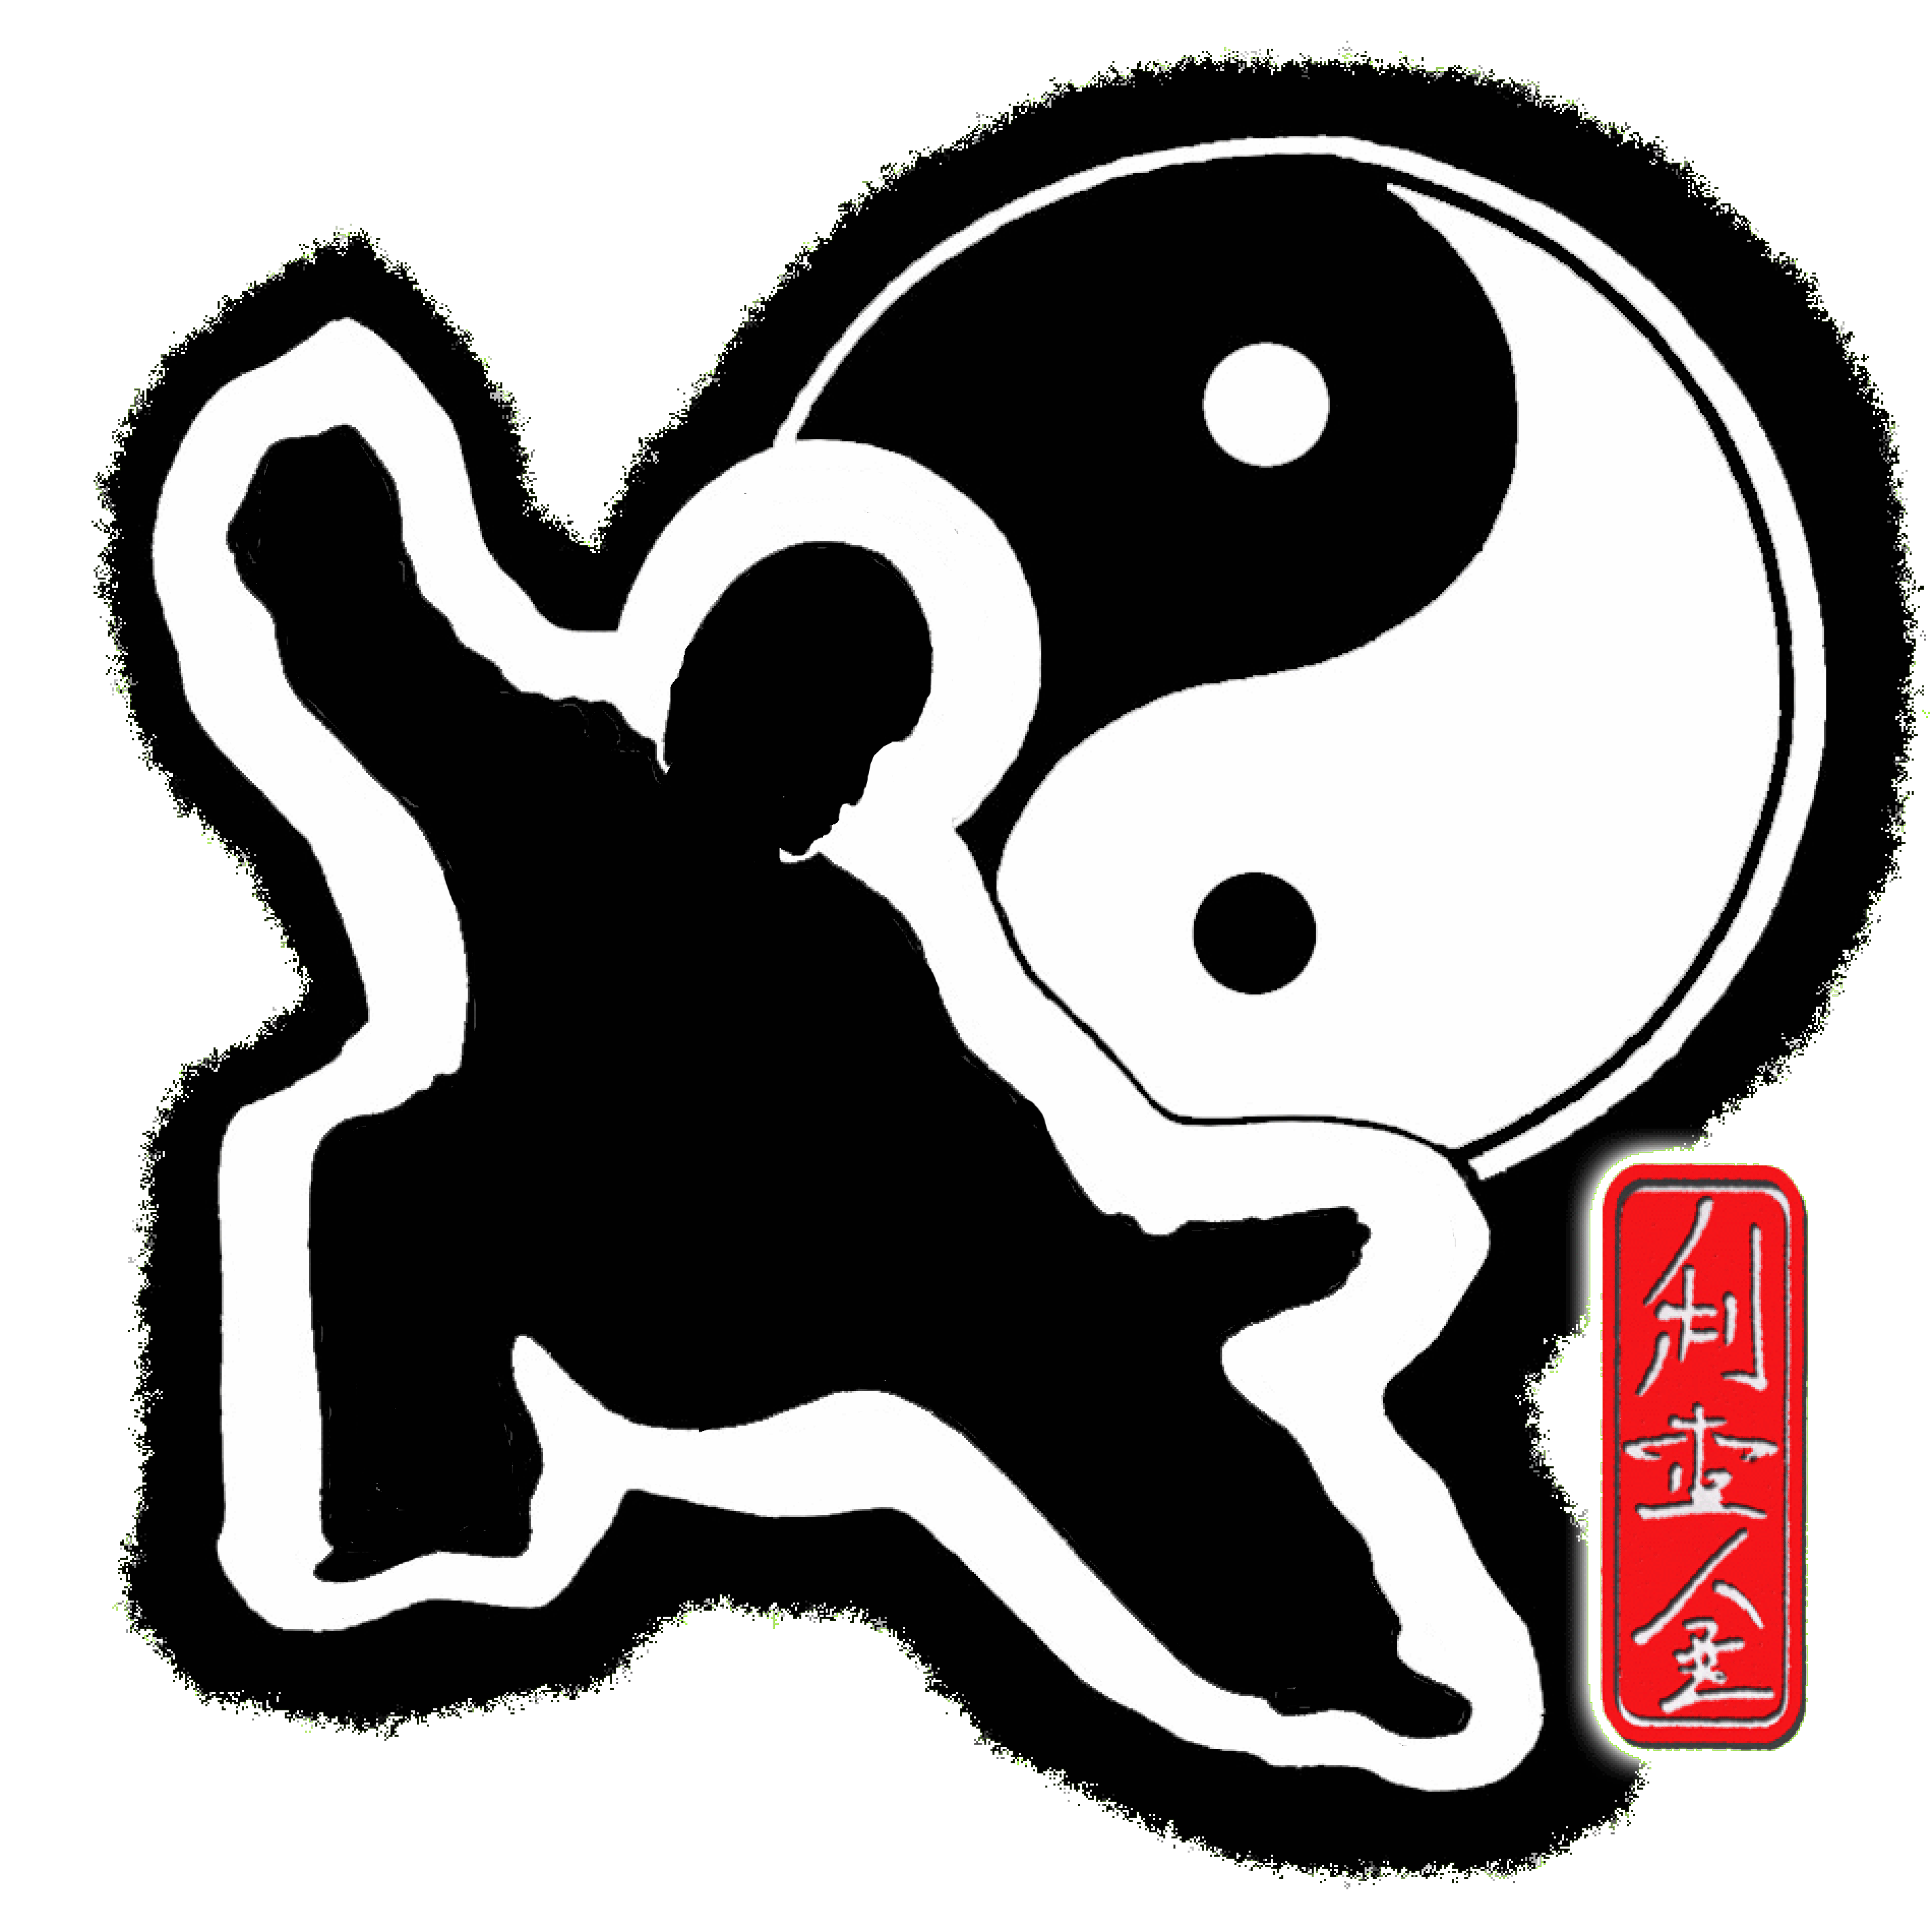 Mieir King Tai Chi Chi Kung Chinese Wand health and wellness logo